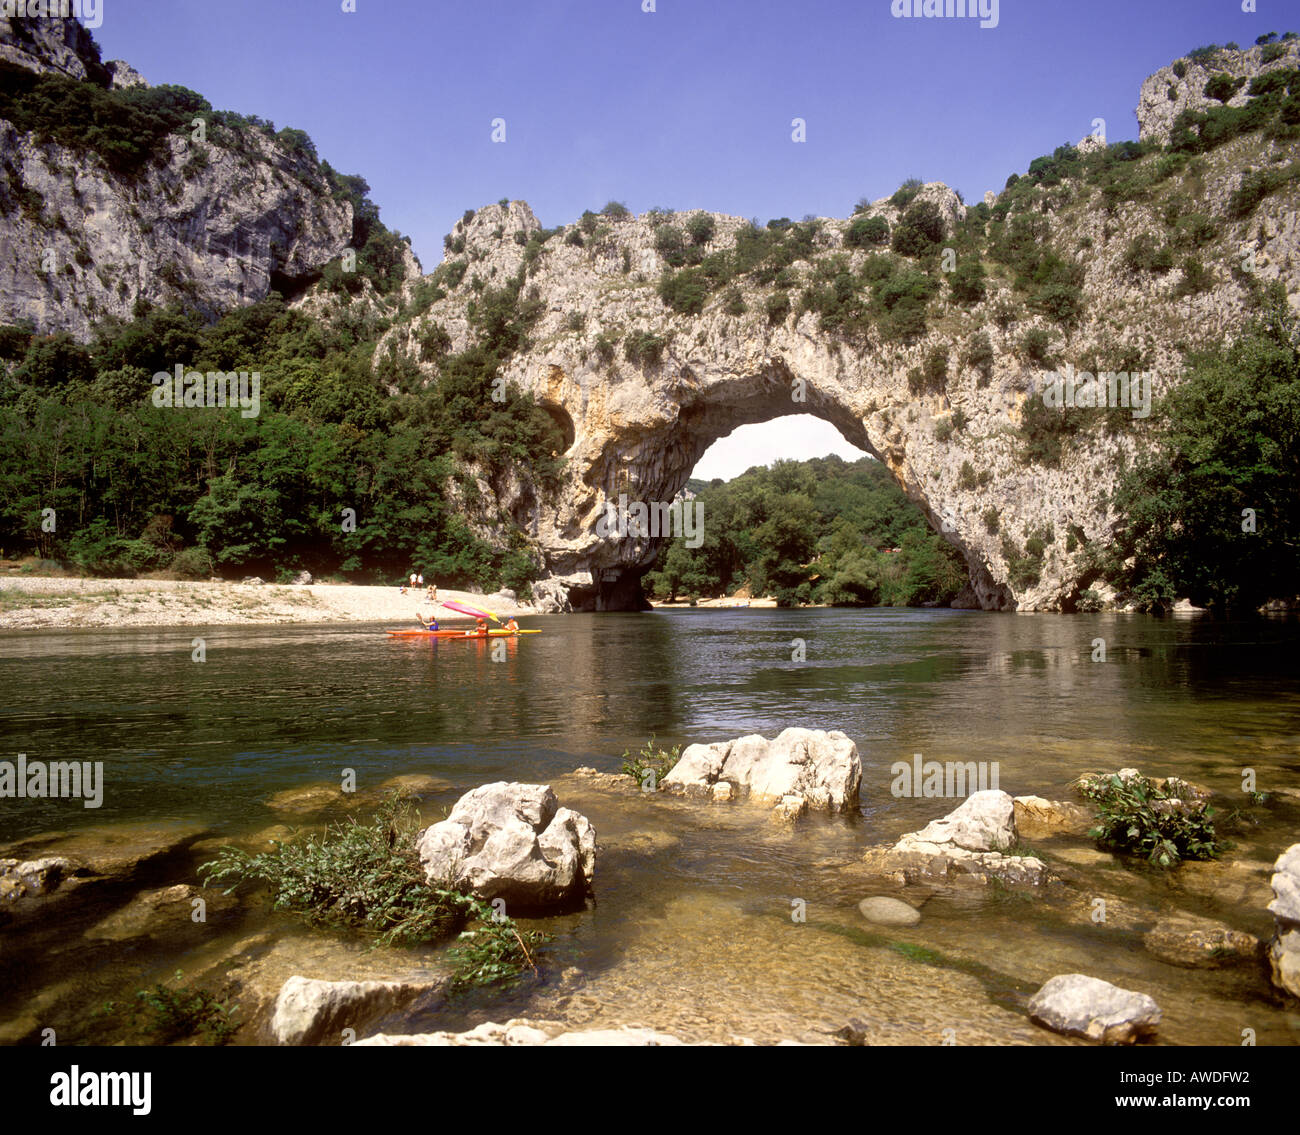 La France, l'Ardèche, Pont d'Arc, vue sur le pont d'Arc sur la rivière Ardèche Banque D'Images